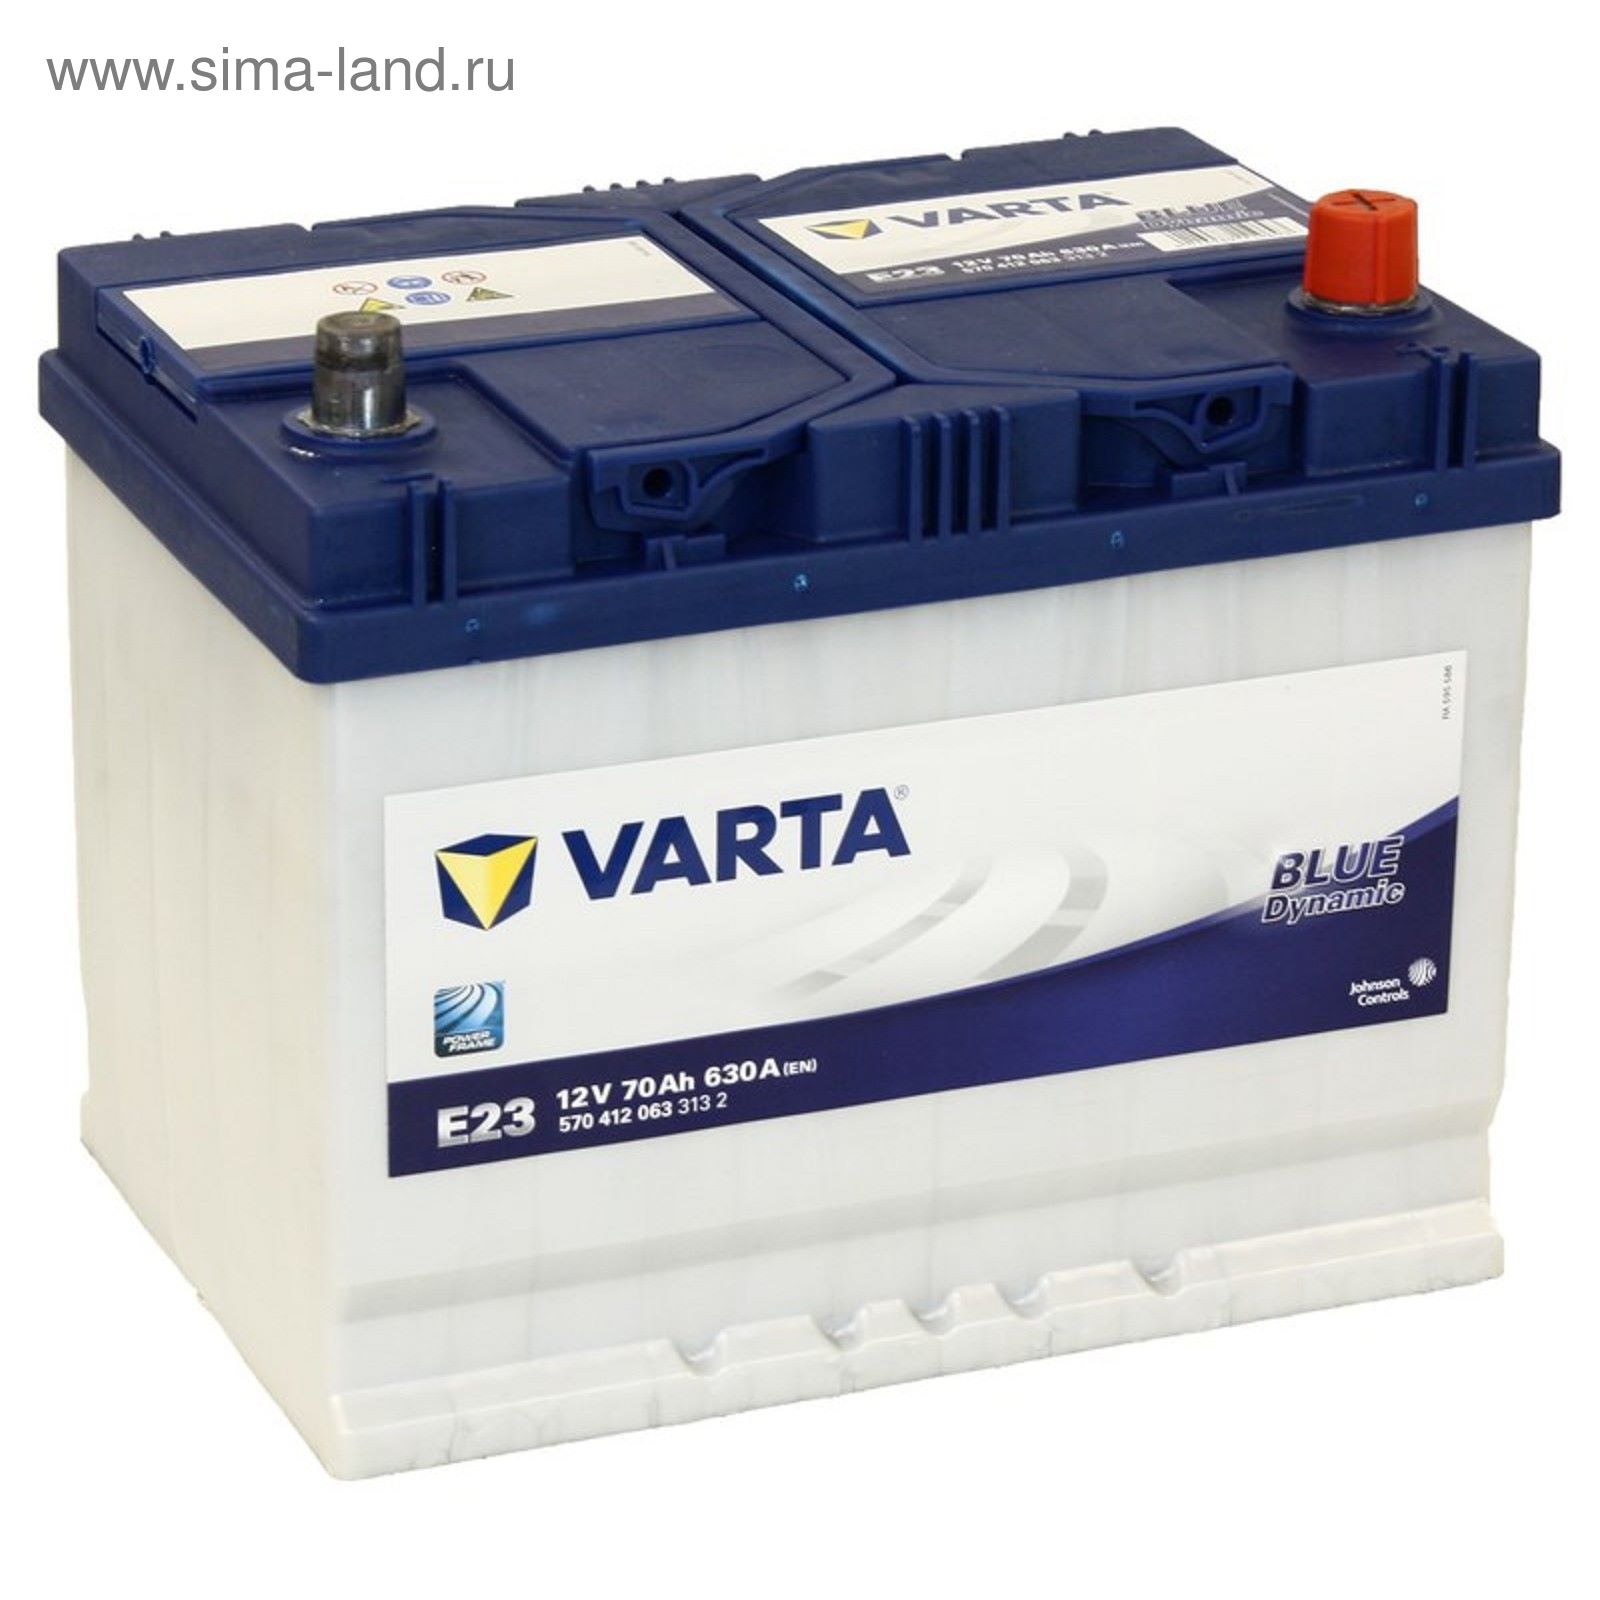 Аккумуляторы обратной полярности купить в москве. Varta Blue Dynamic e23 (570 412 063). Varta 95ah. Аккумулятор автомобильный варта 12в 75ач. Аккумулятор Varta Standart 100 а/ч.